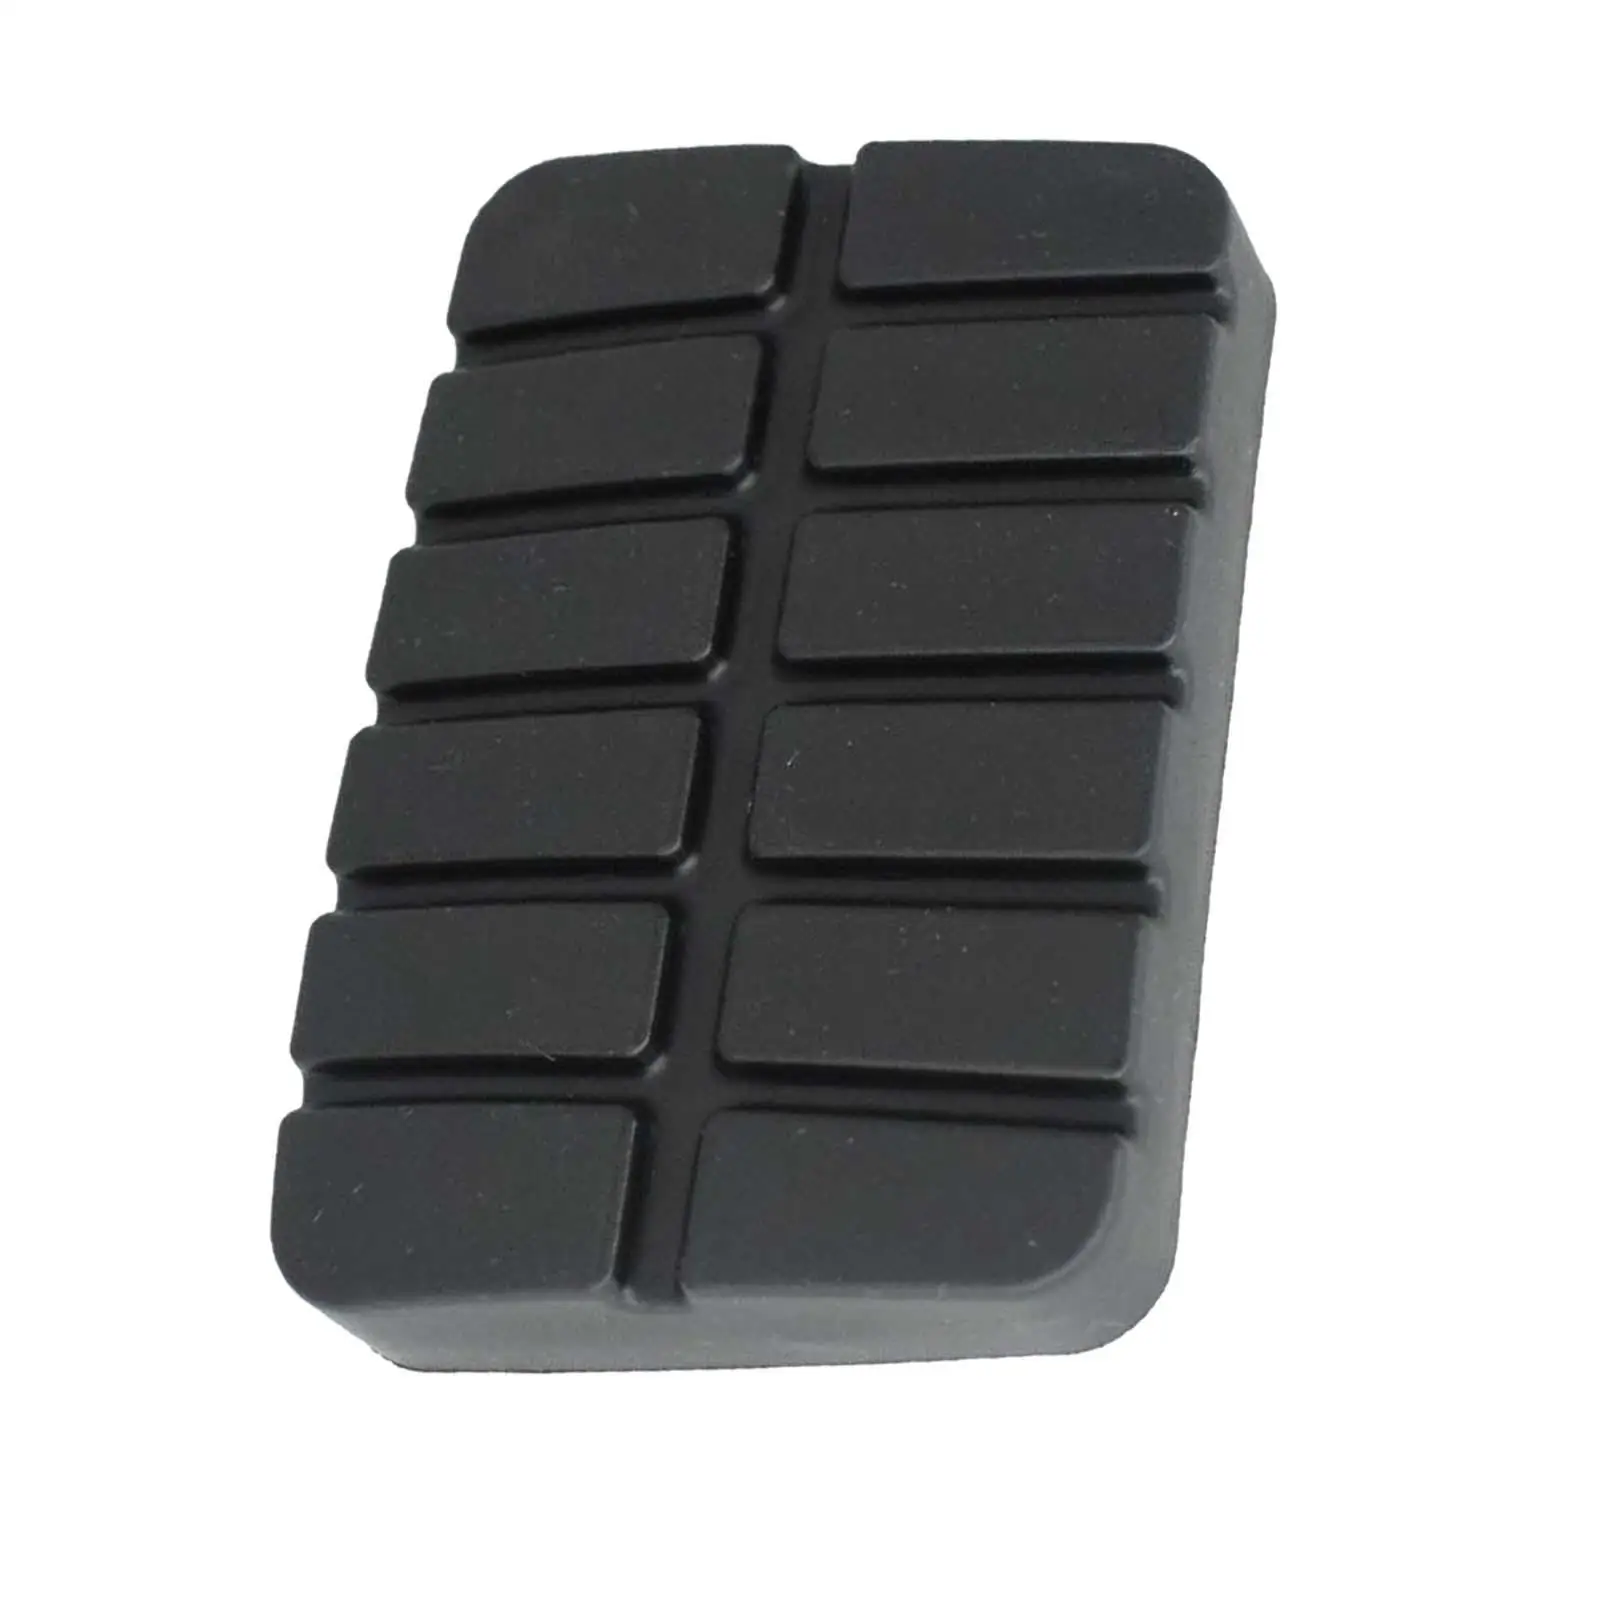 Black Brake Clutch Pedal Rubber Cover 49751-ni110 Auto Accessory Sturdy